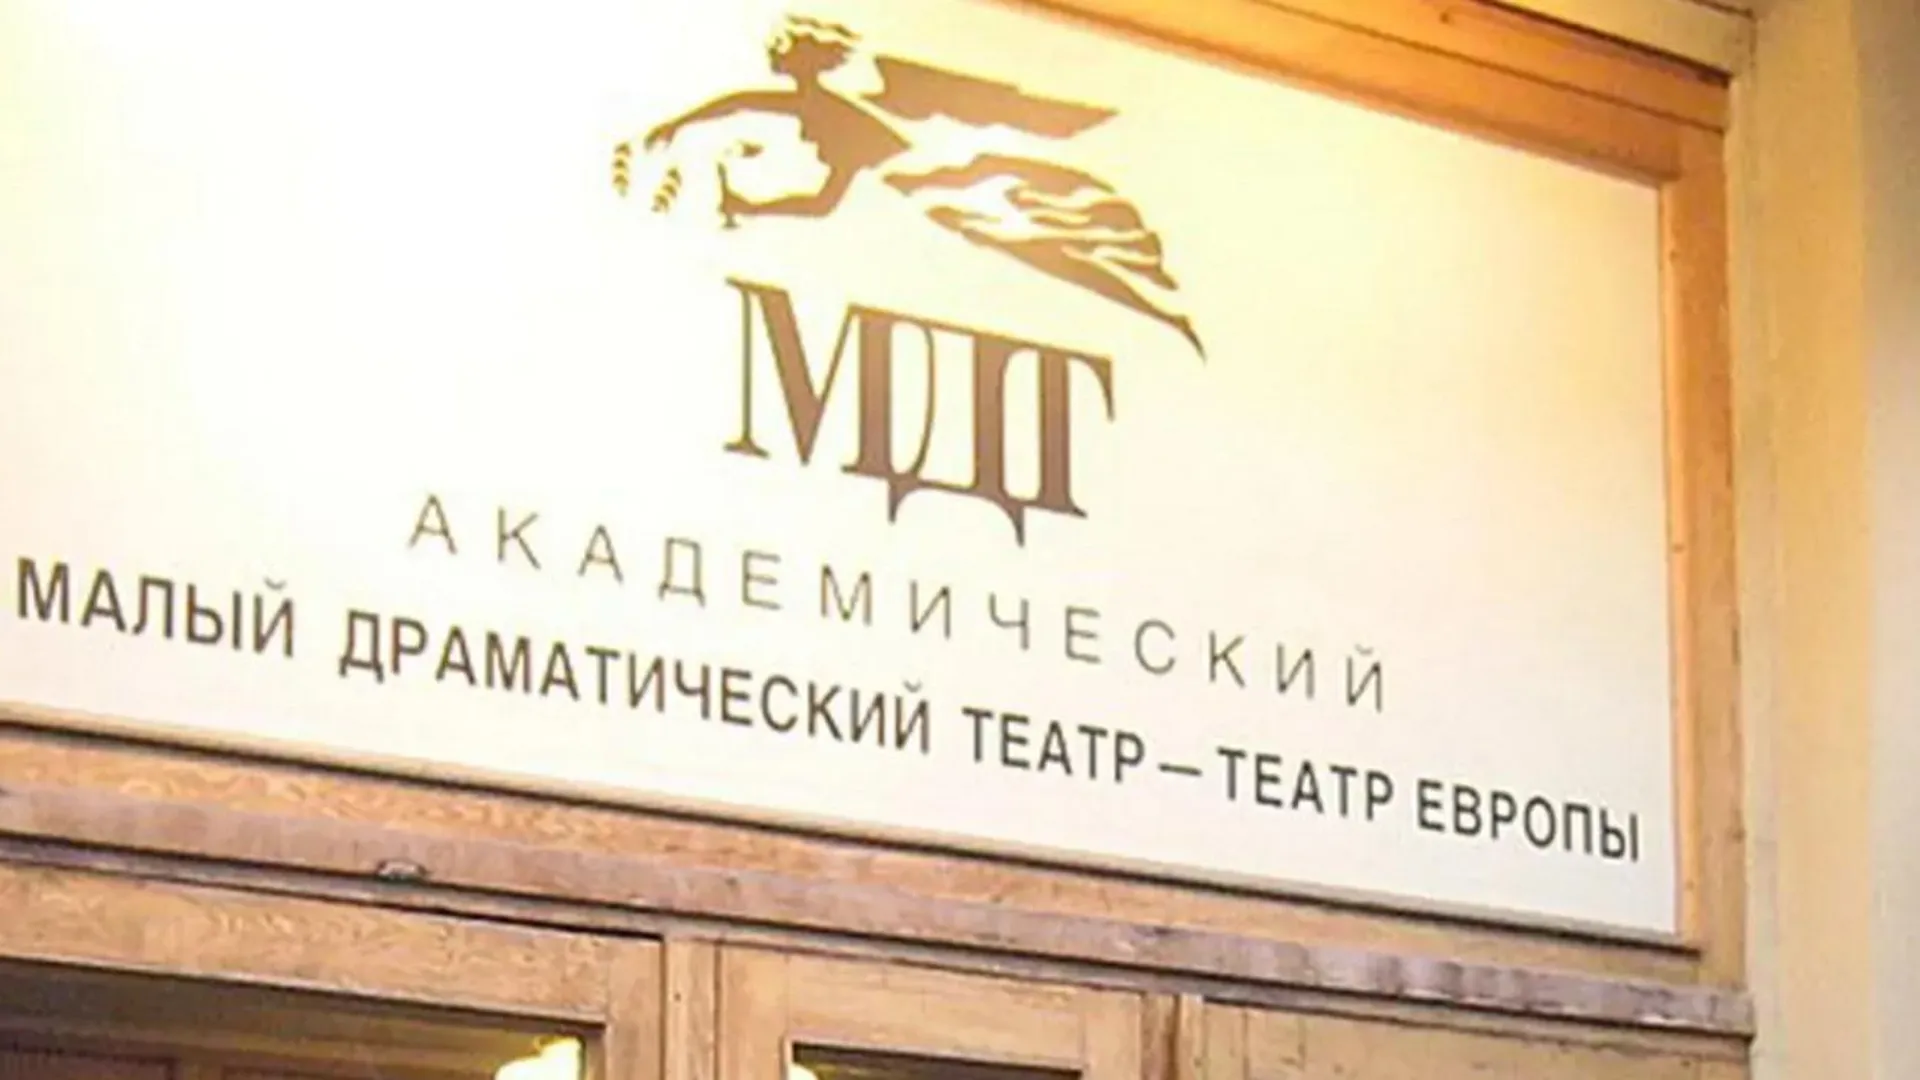 Малый драматический театр в Петербурге оштрафовали на 15 тысяч рублей